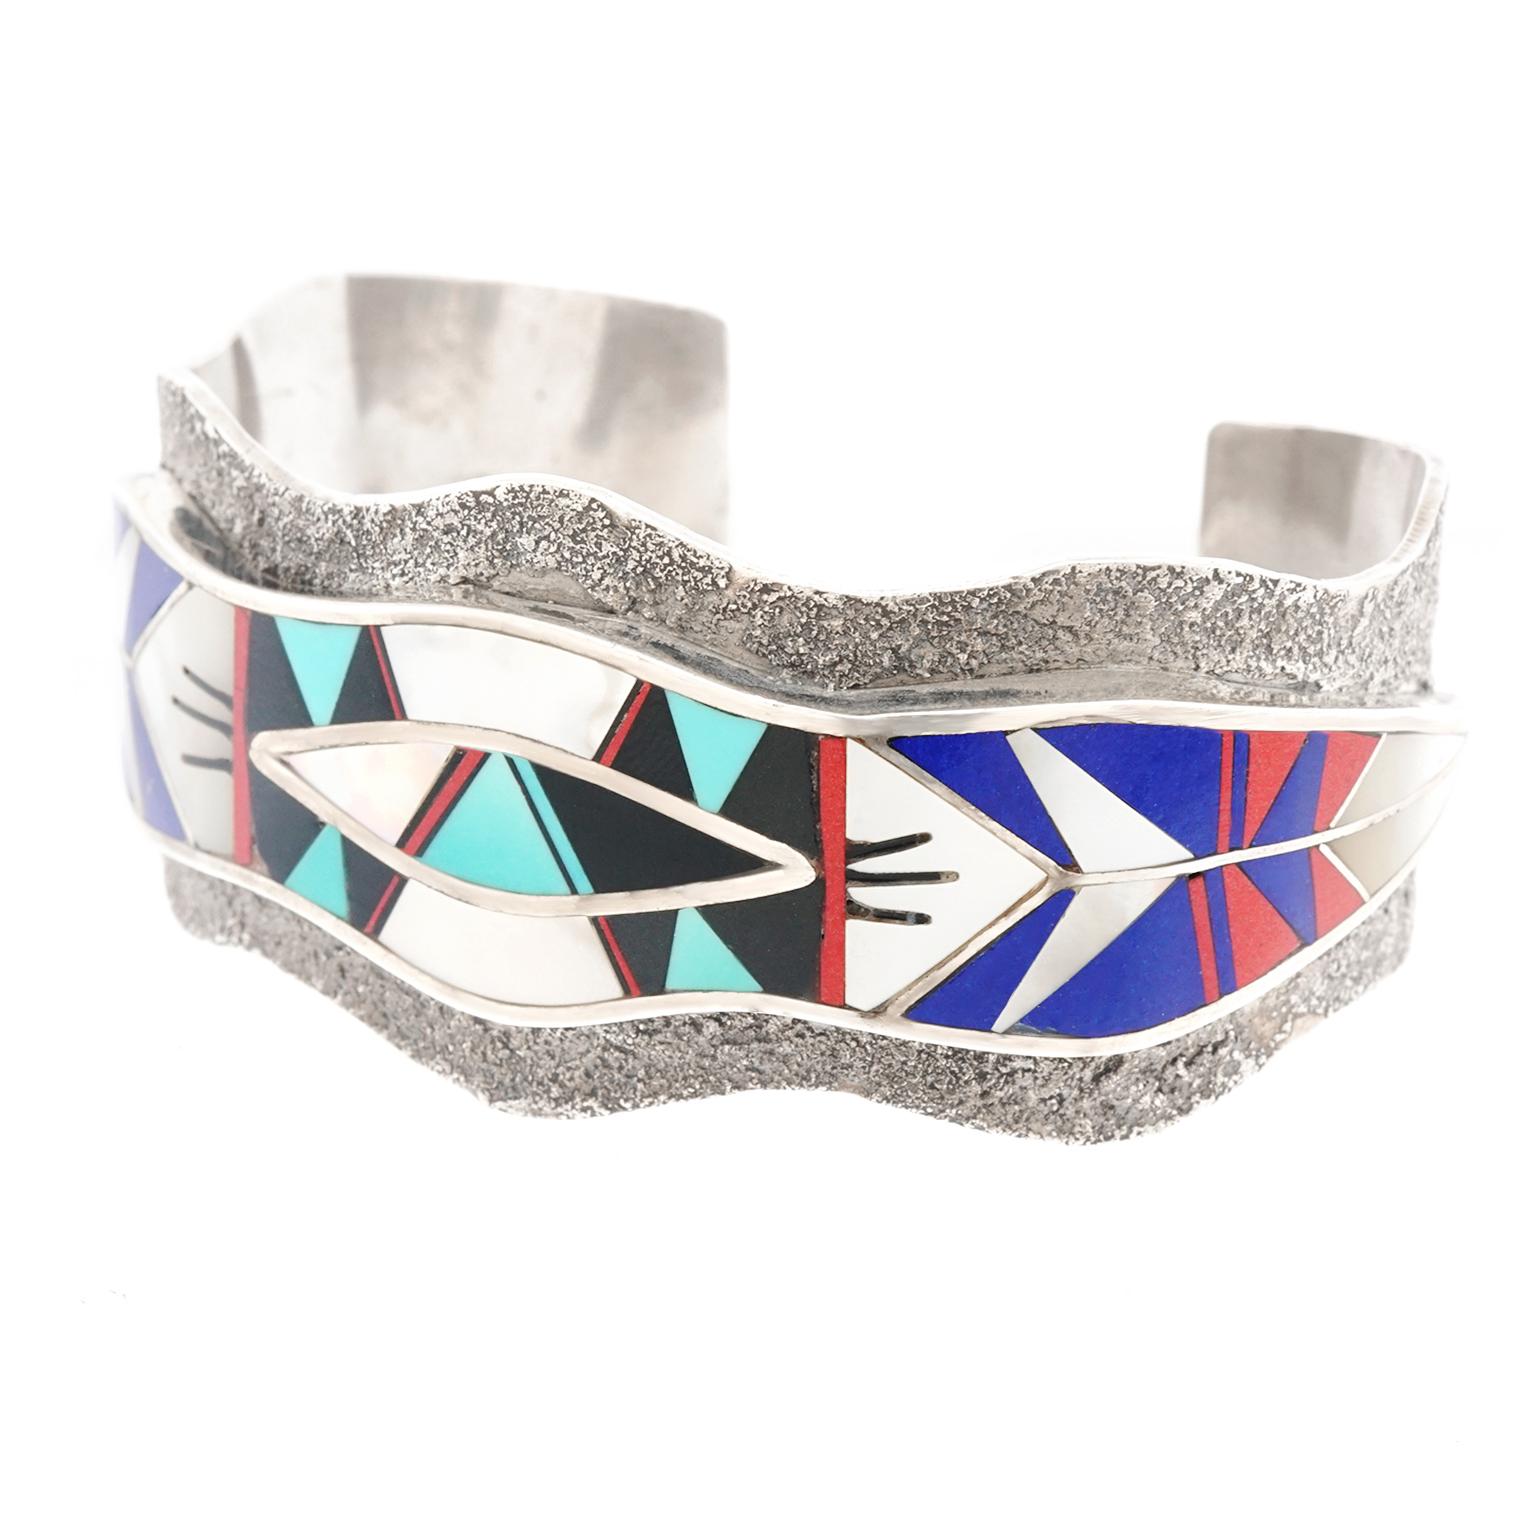 Native American Zuni Modernist Inlaid Stone Cuff Bracelet